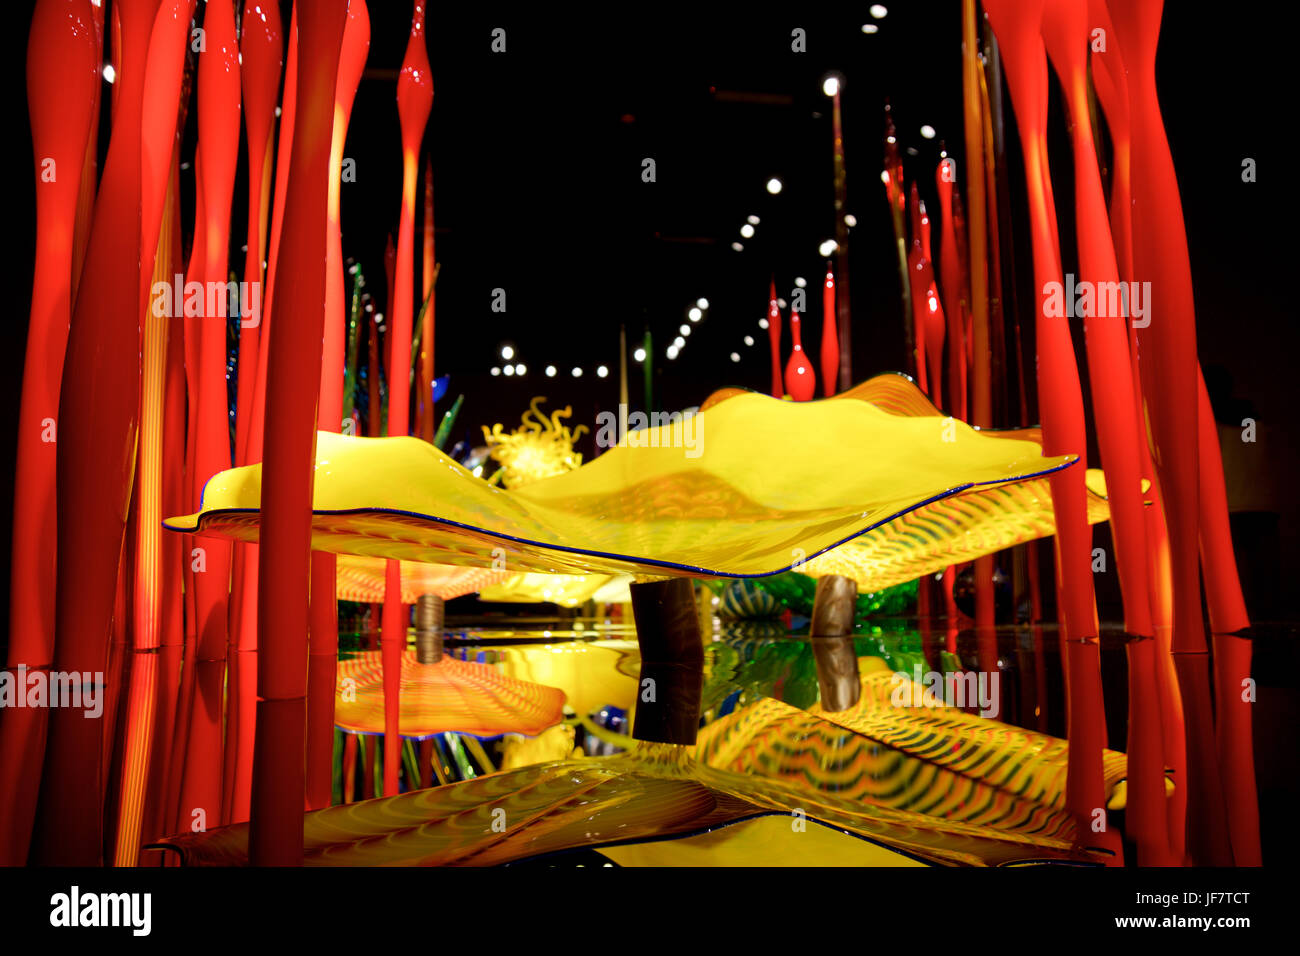 SEATTLE, WASHINGTON, USA - 23. Januar 2017: Glasbläserei in abstrakten Formen der Blumen in rot und gelb, ausstellen von amerikanischen Künstler Dale Chihuly im Chihuly Garden und Glasmuseum Stockfoto